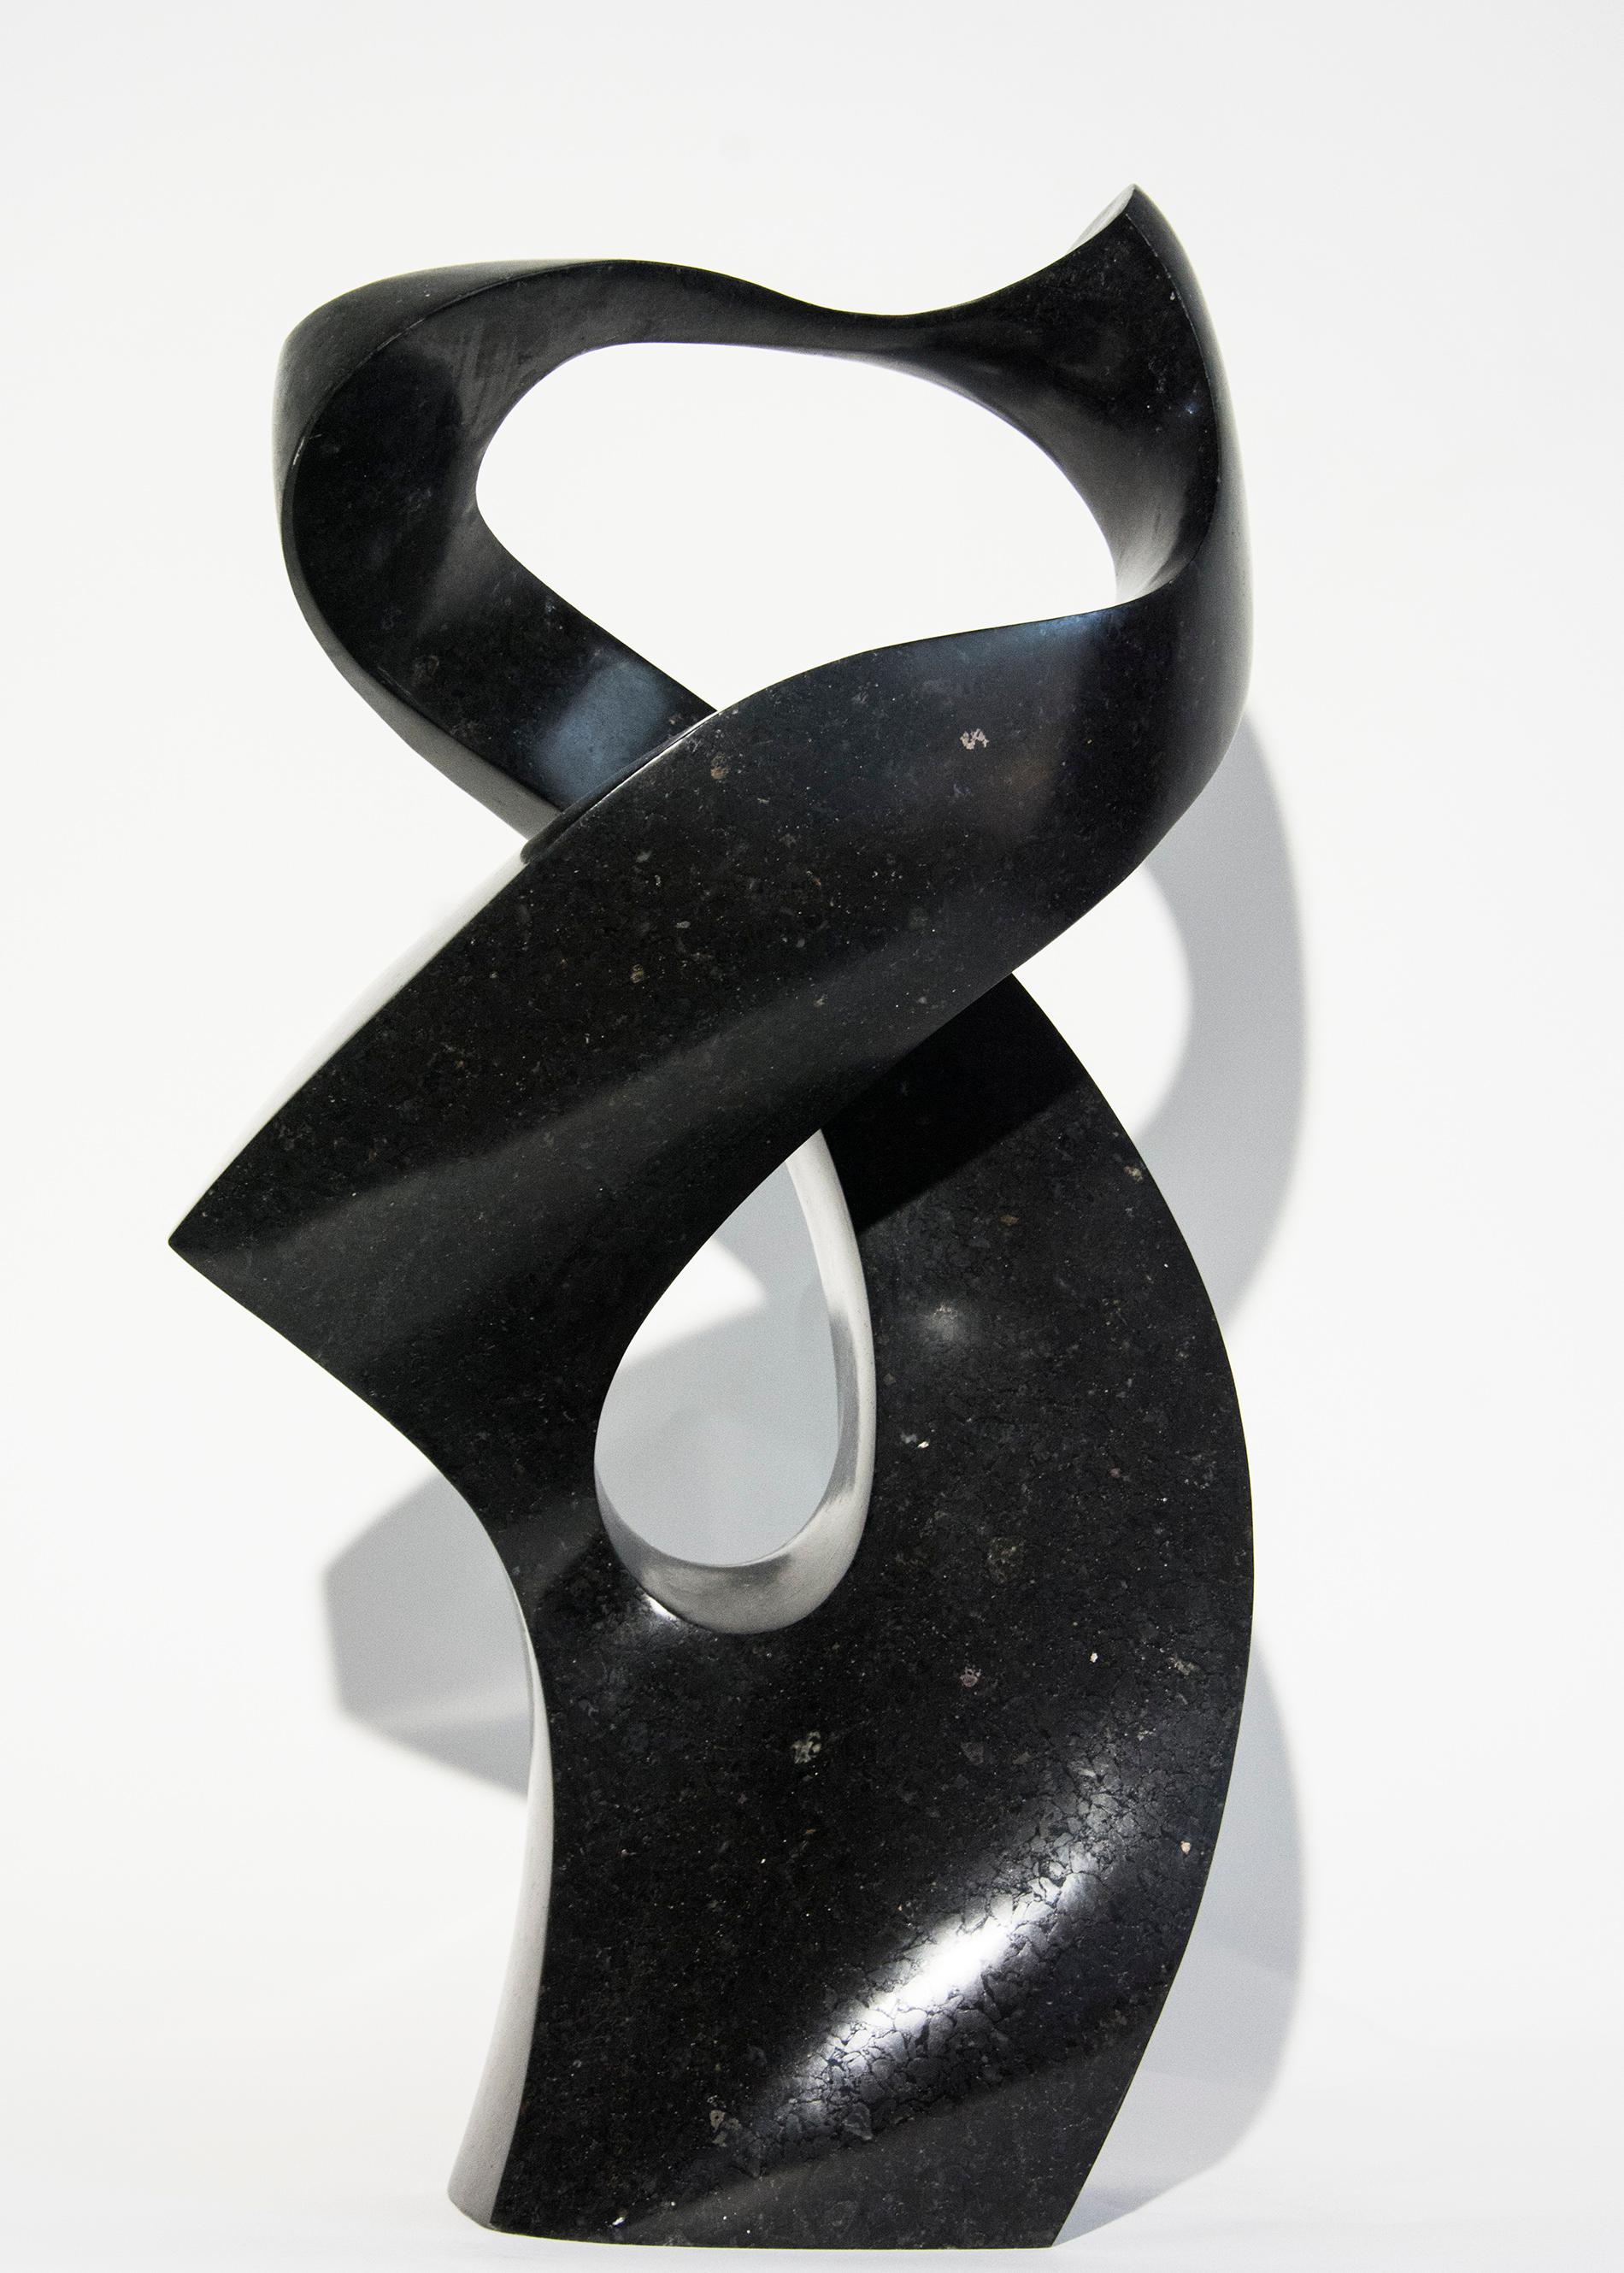 Embrace 4/50 - sculpture en granit noir, sombre, lisse, polie et abstraite